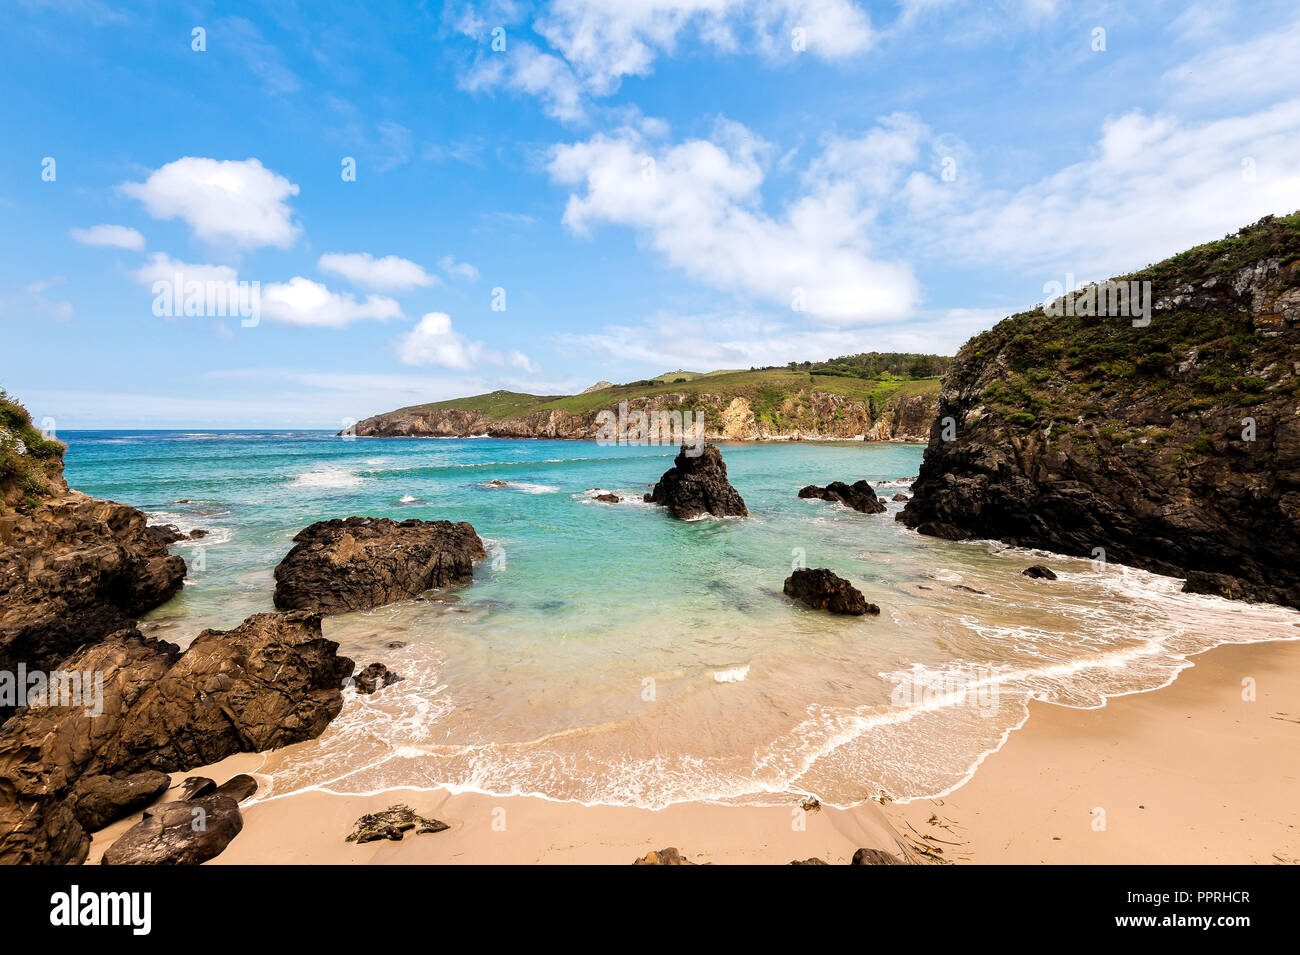 La bellezza della costa atlantica con cliff, spiaggia, oceano e cielo con nuvole. La Galizia, Spagna. Foto Stock